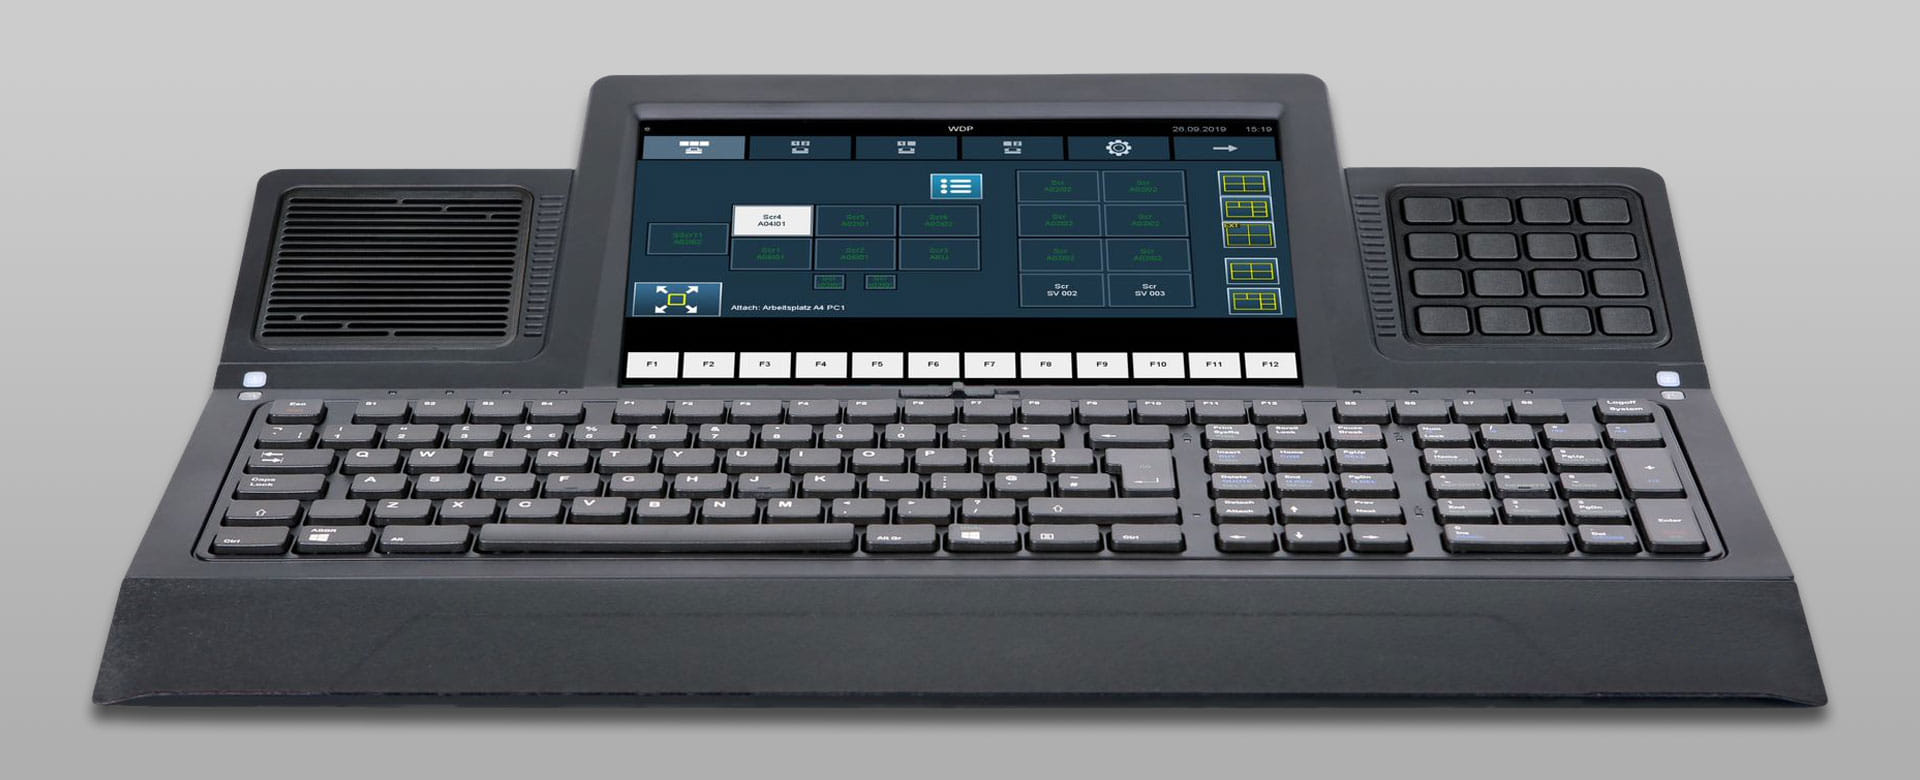 Leitstandtechnik: Smart Touch Keyboard - das multifunktionale KVM-Benutzerinterface